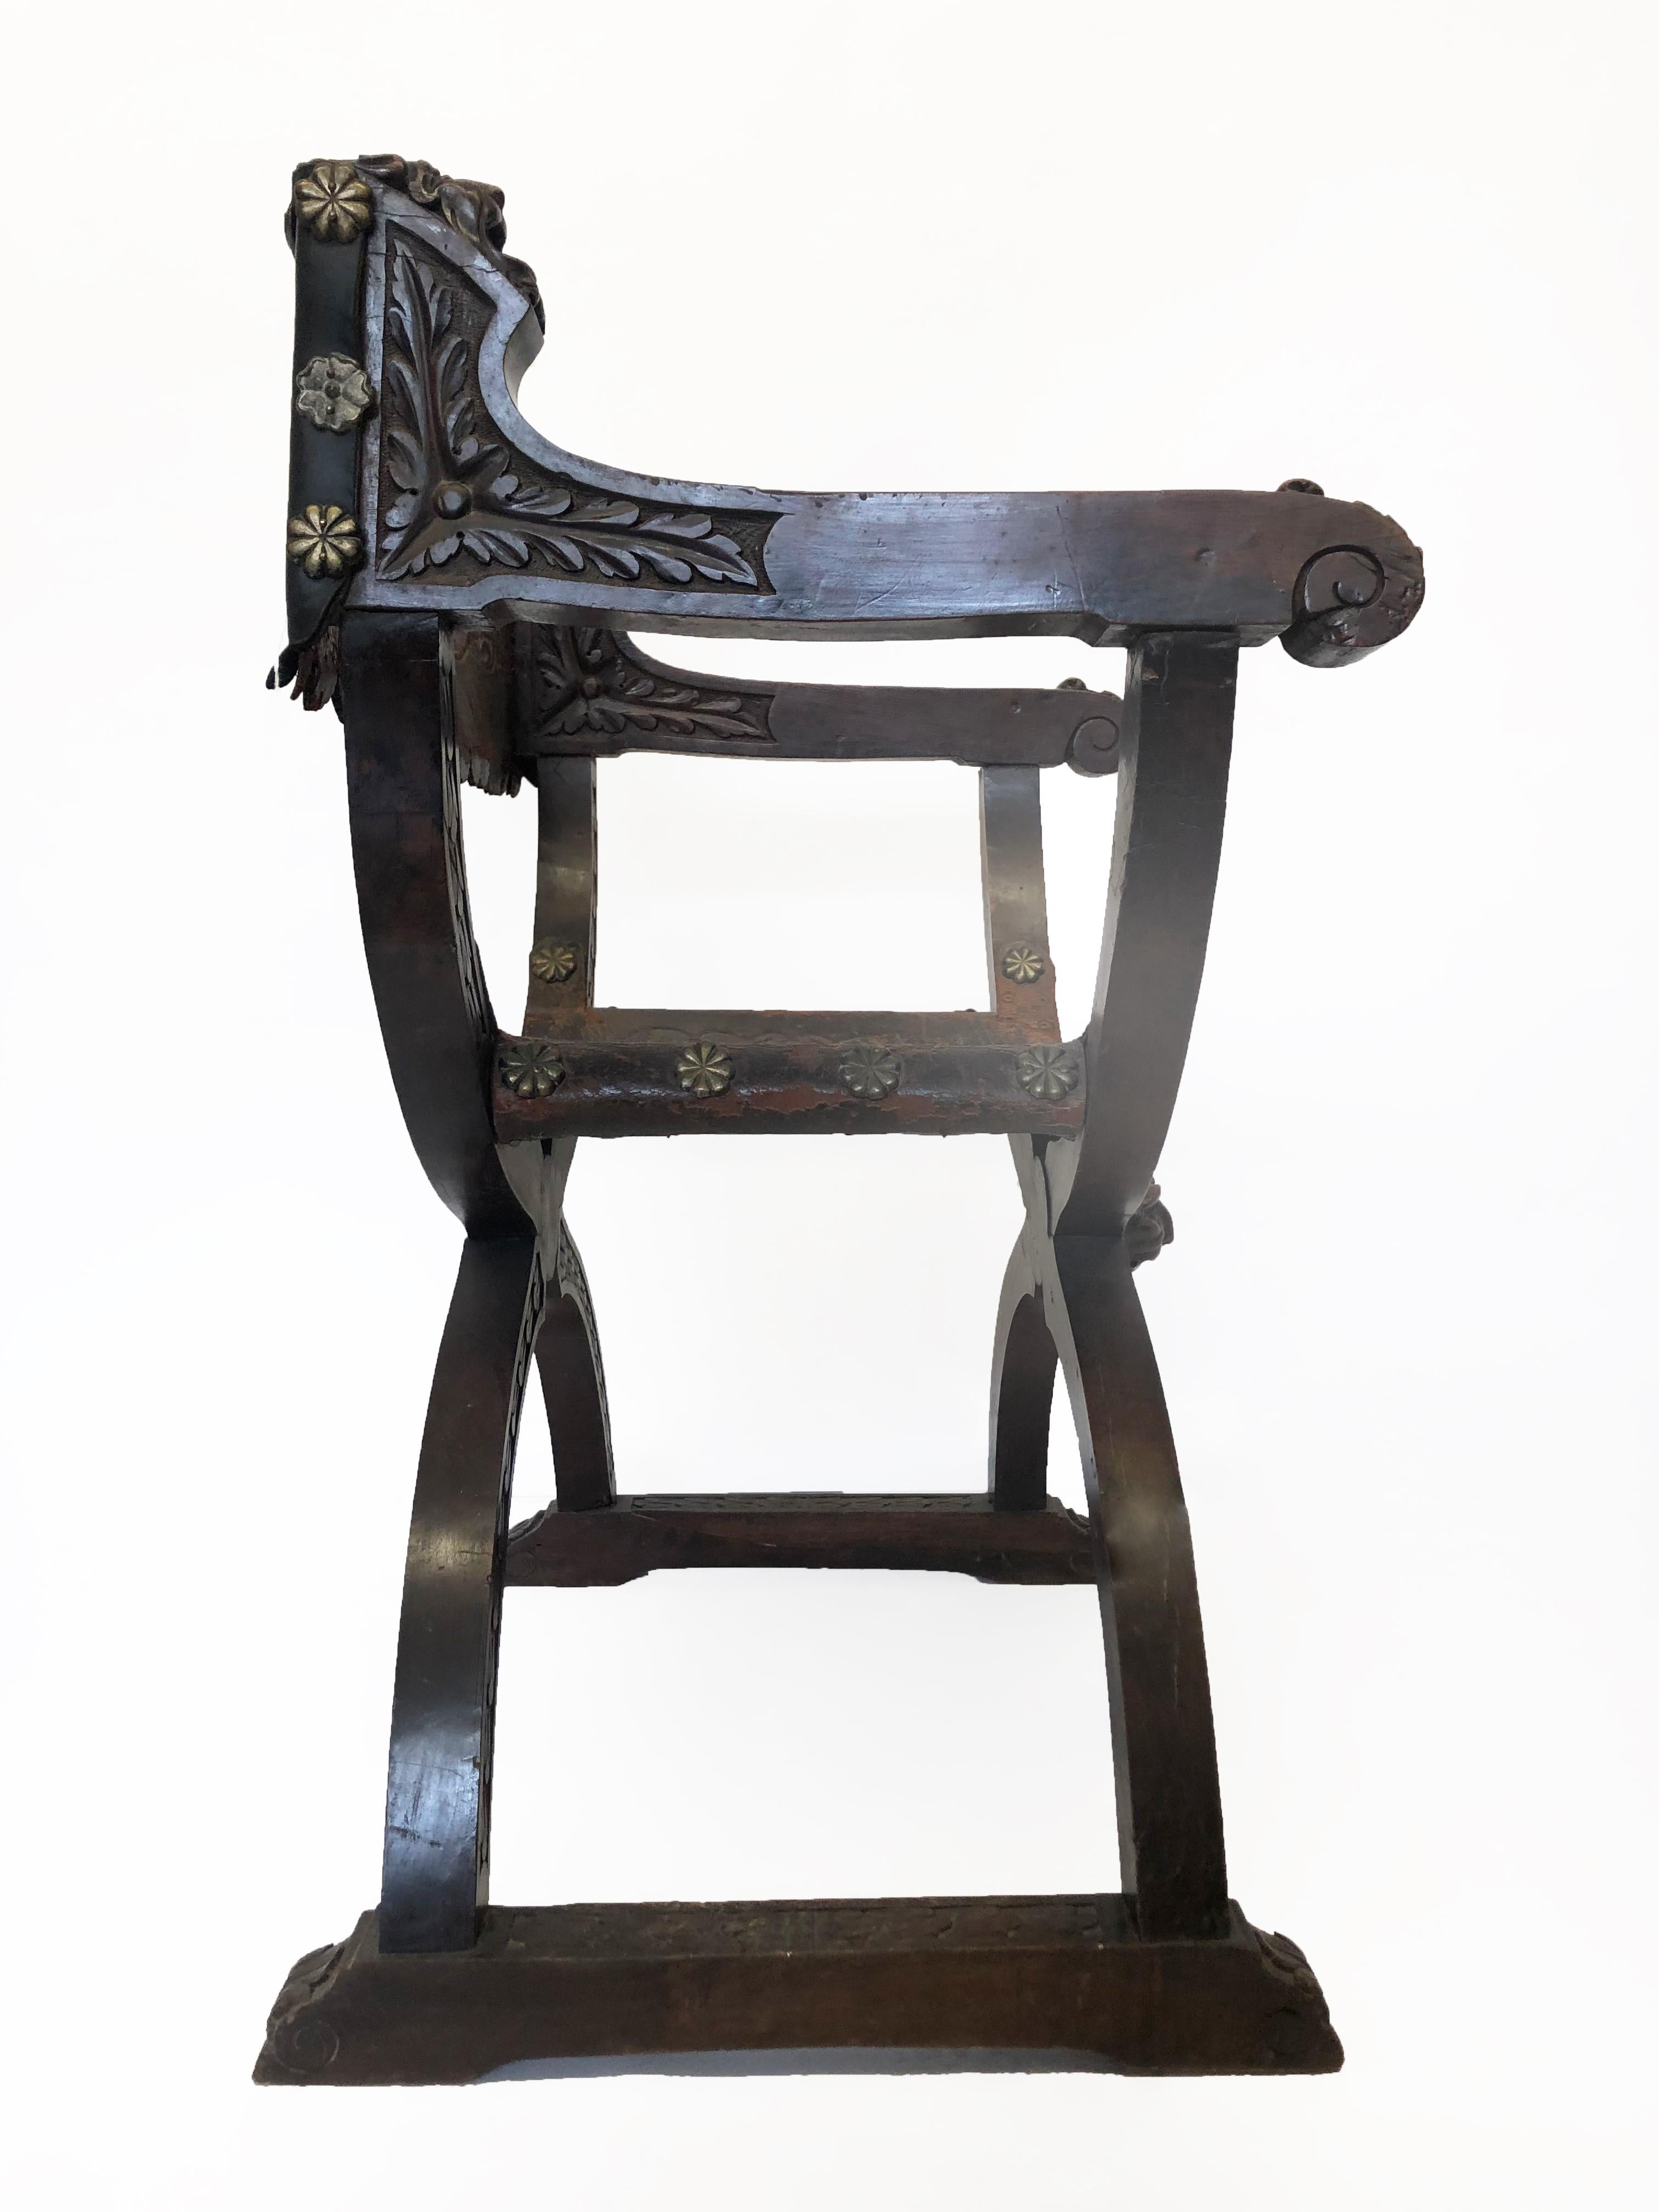 Dies ist ein Dante- oder Savonarola-Sessel aus Holz und Leder. Das Holzwerk ist ein X-förmiger Rahmen mit Lederrücken und Sitzfläche. Der gesamte Stuhl ist mit Schnitzereien in den verschnörkelten Armlehnen verziert und weist eine hohe